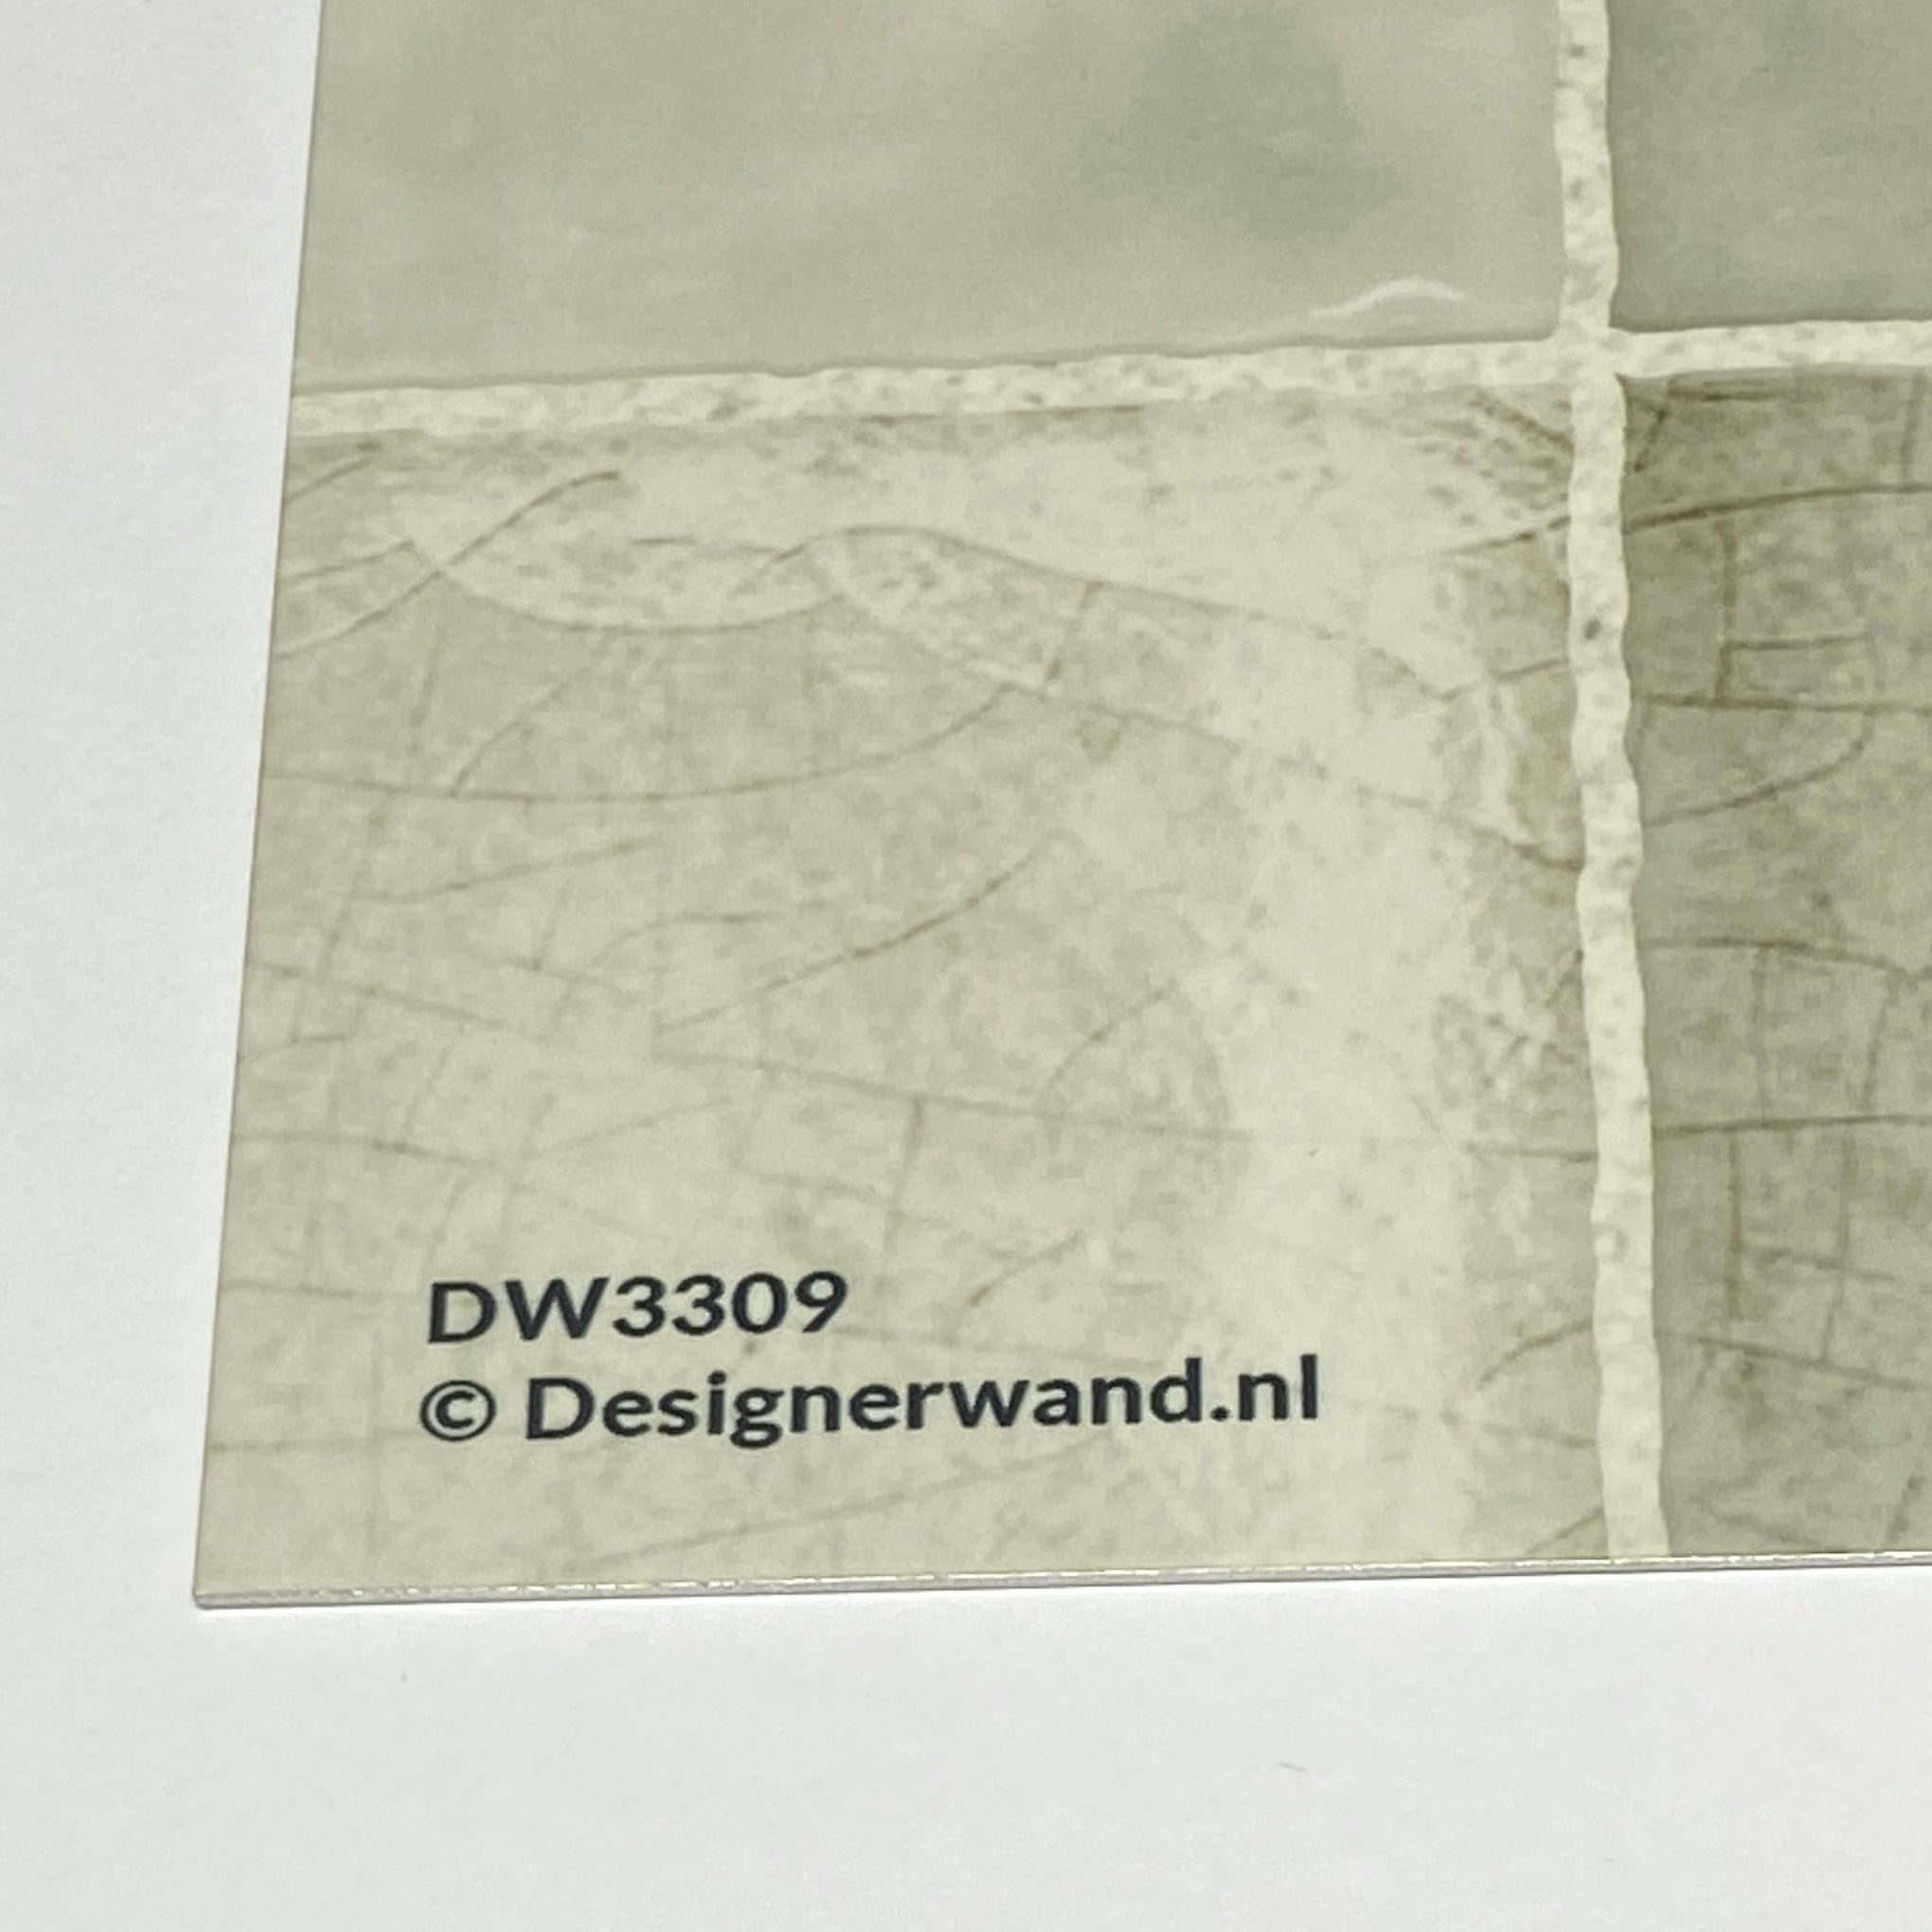 DW3309 – DW Solid Probe